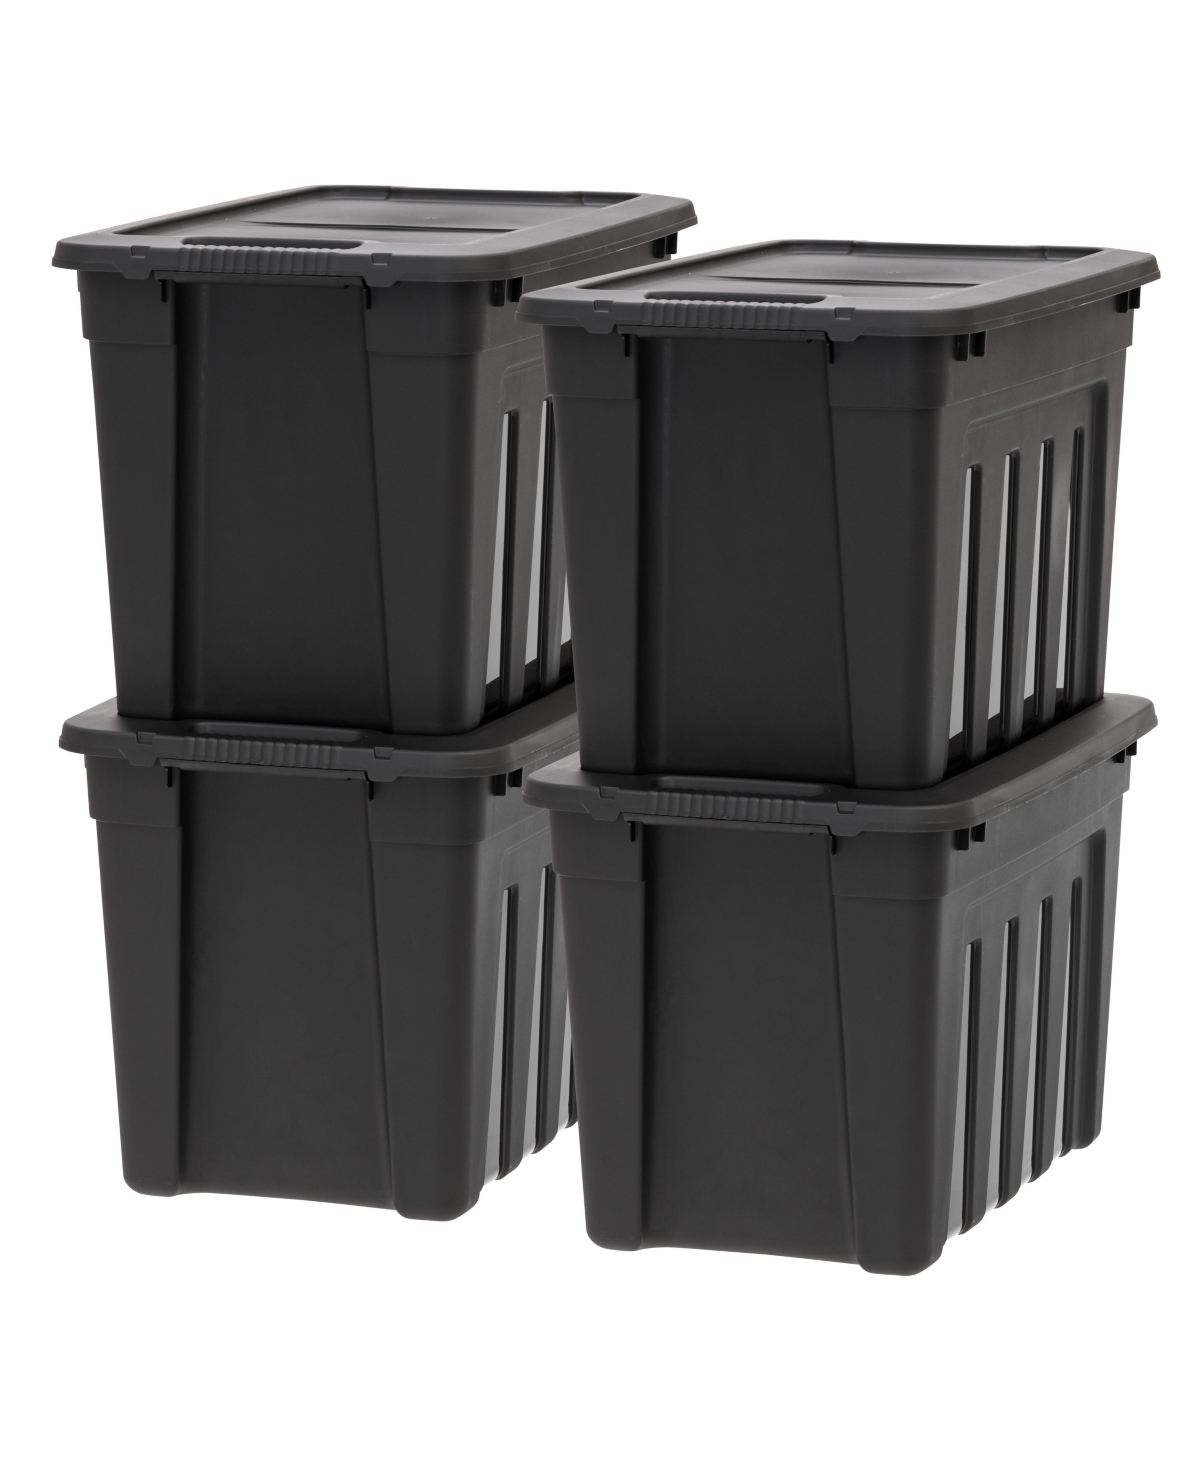 20 Gallon Heavy-Duty Storage Plastic Bin Tote Container, Black, Set of 4 - Black